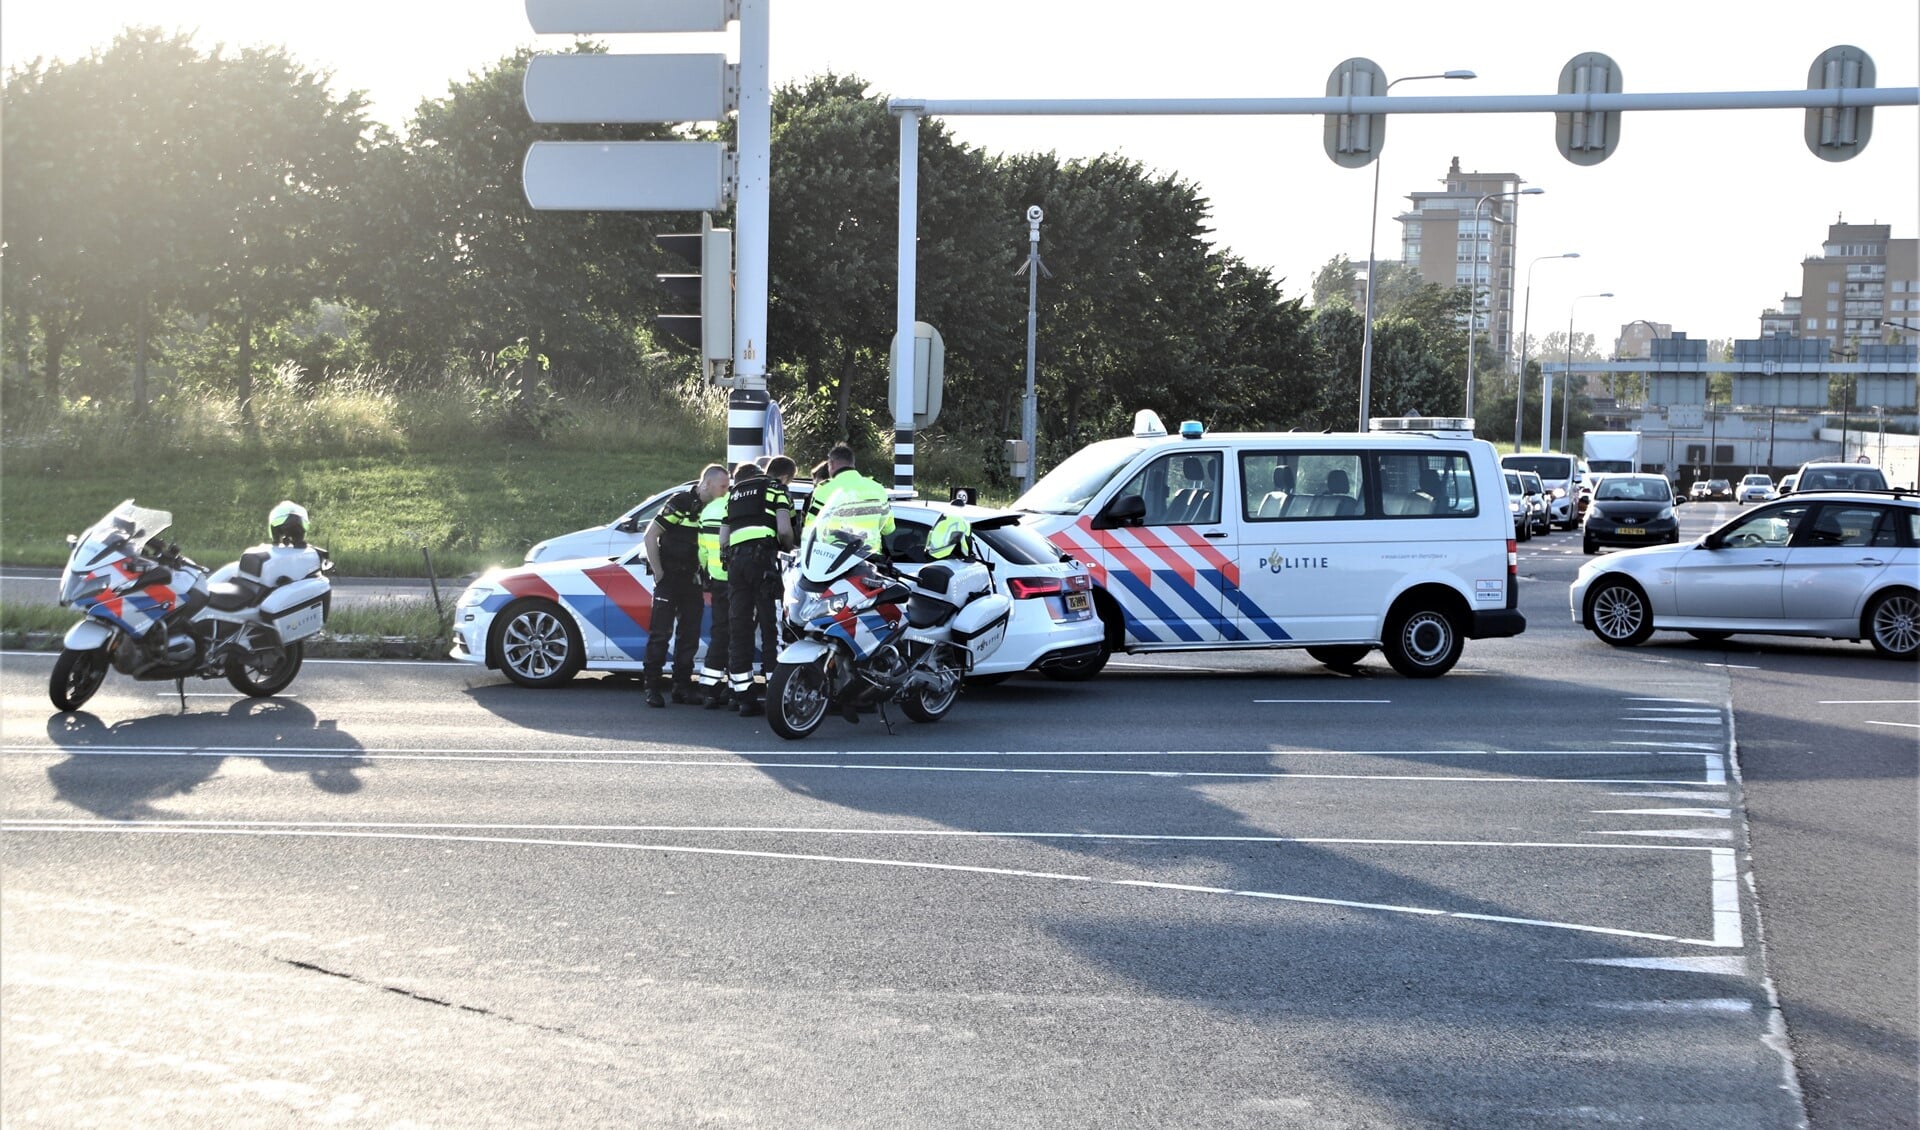 De politie bij de af- en oprit van de A4 waar de verdachten werden aangehouden (foto: Rene Hendriks).